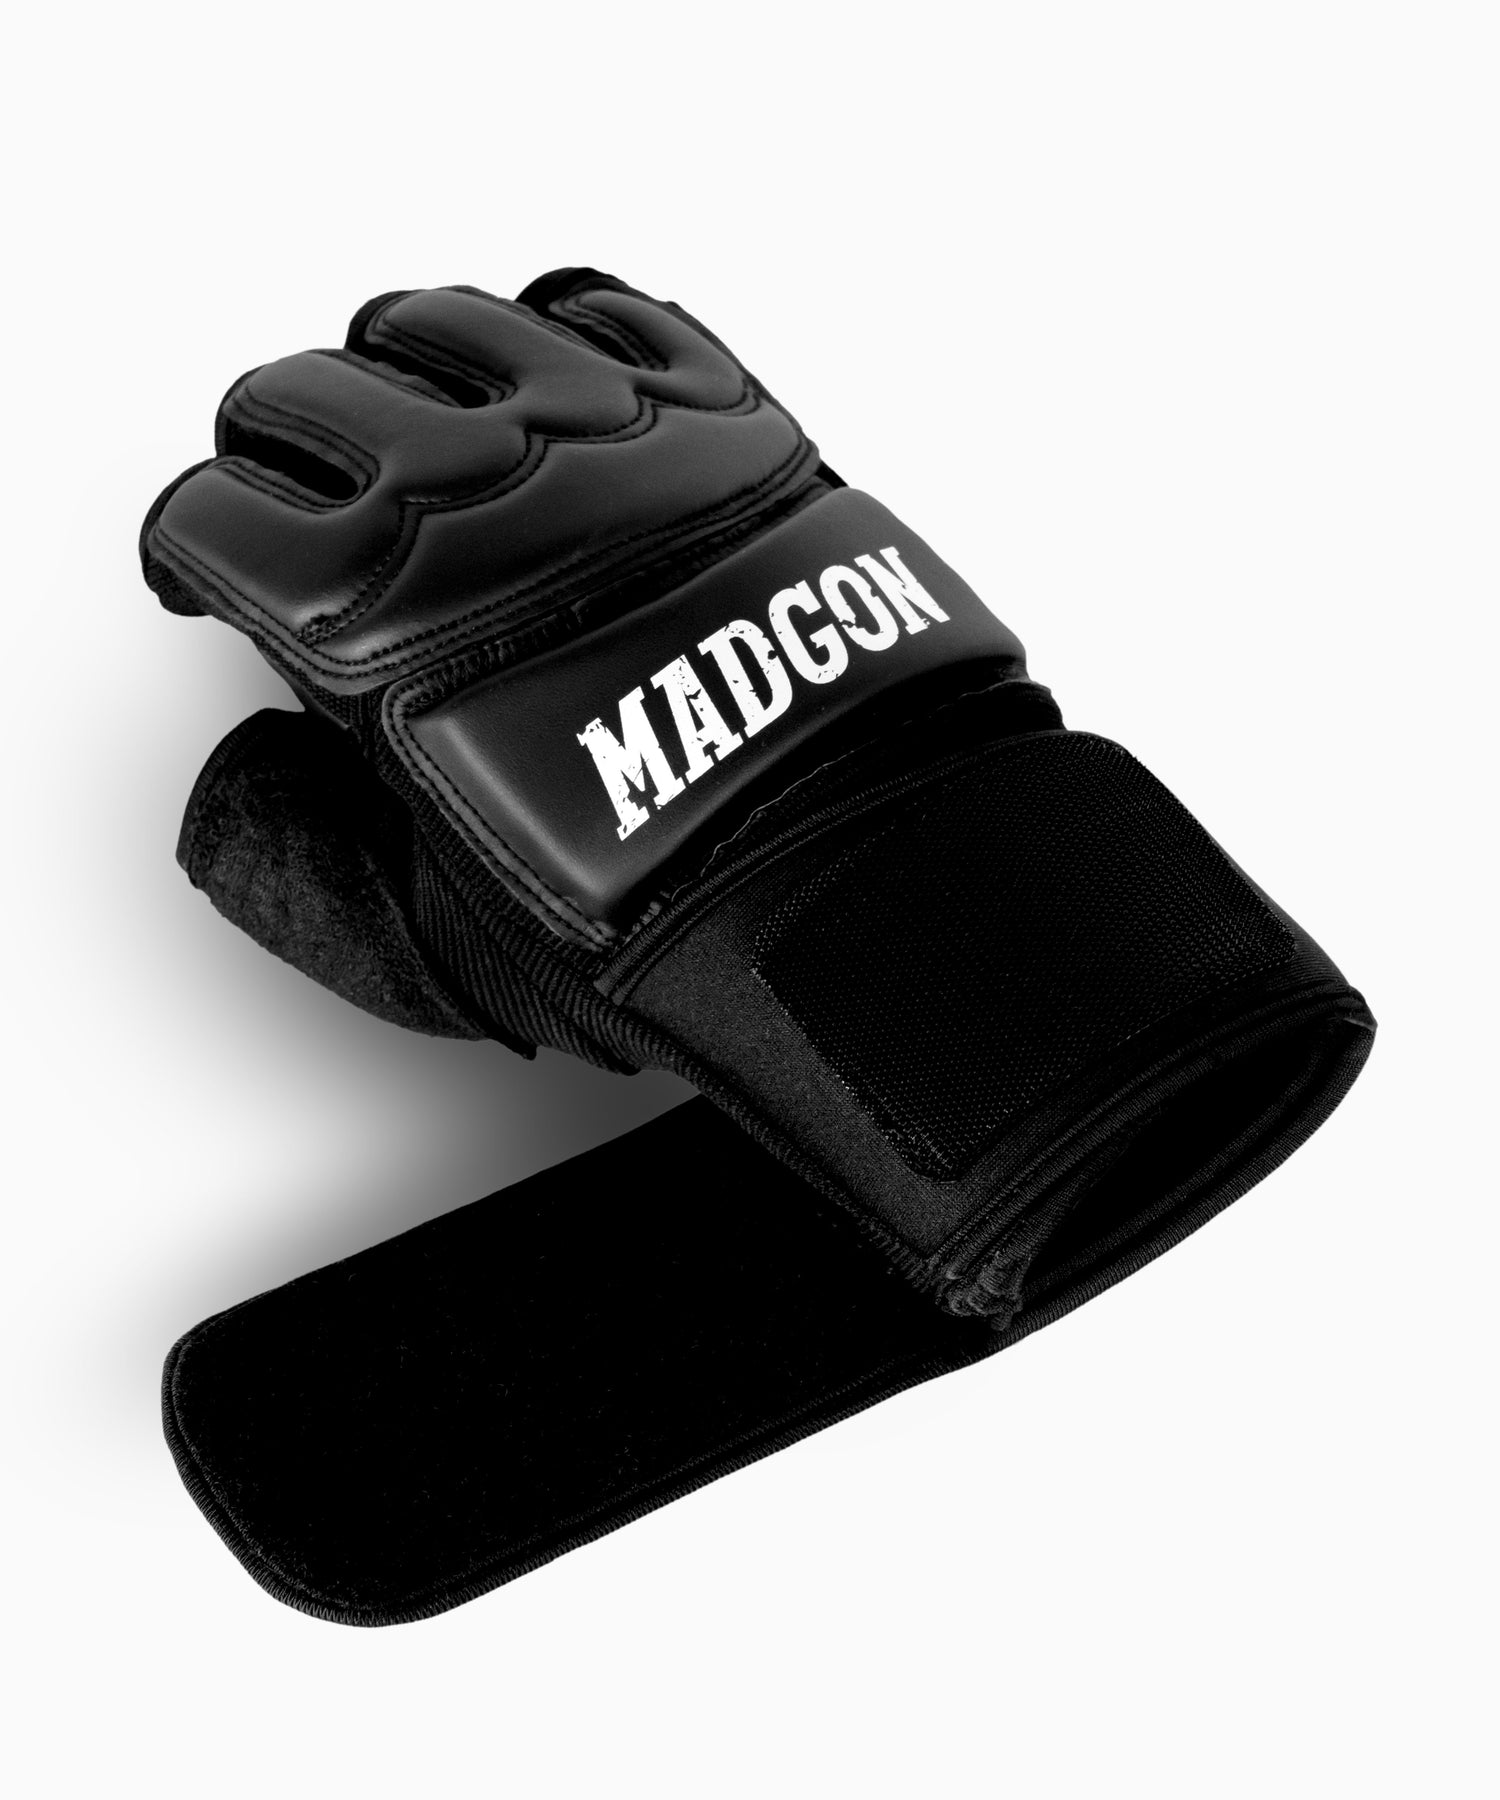 Sandsack Fitness Handschuh schwarz für Frauen und – Männer MADGON